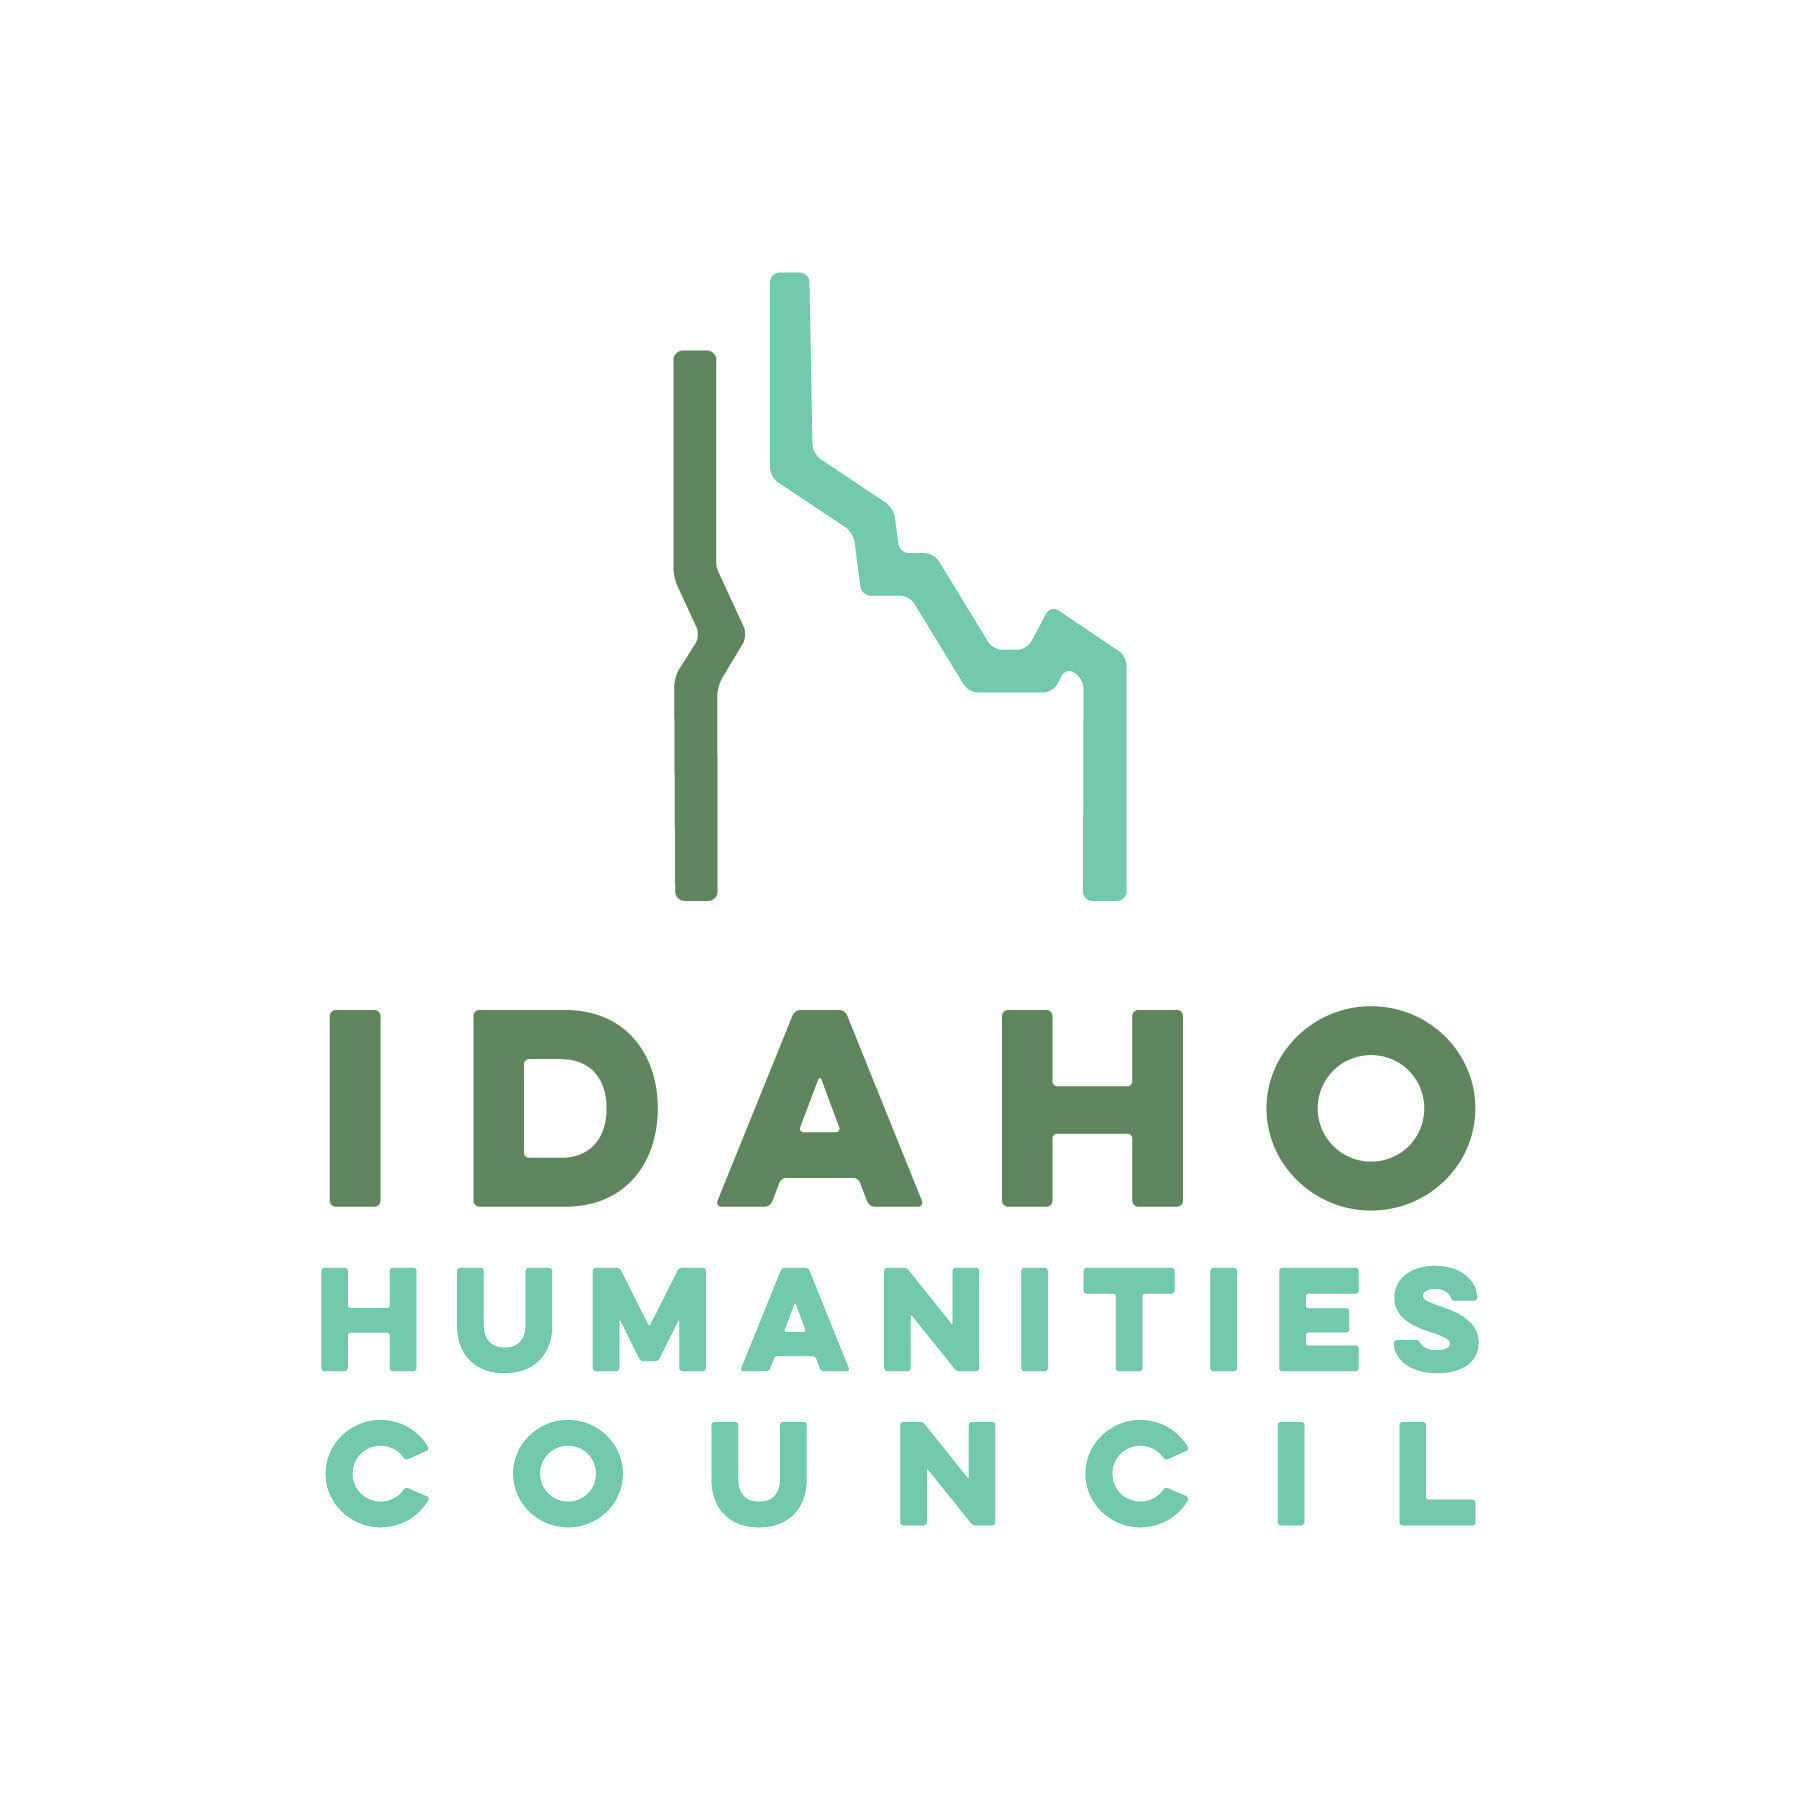 Council Logo - IHC Logos Humanities Council